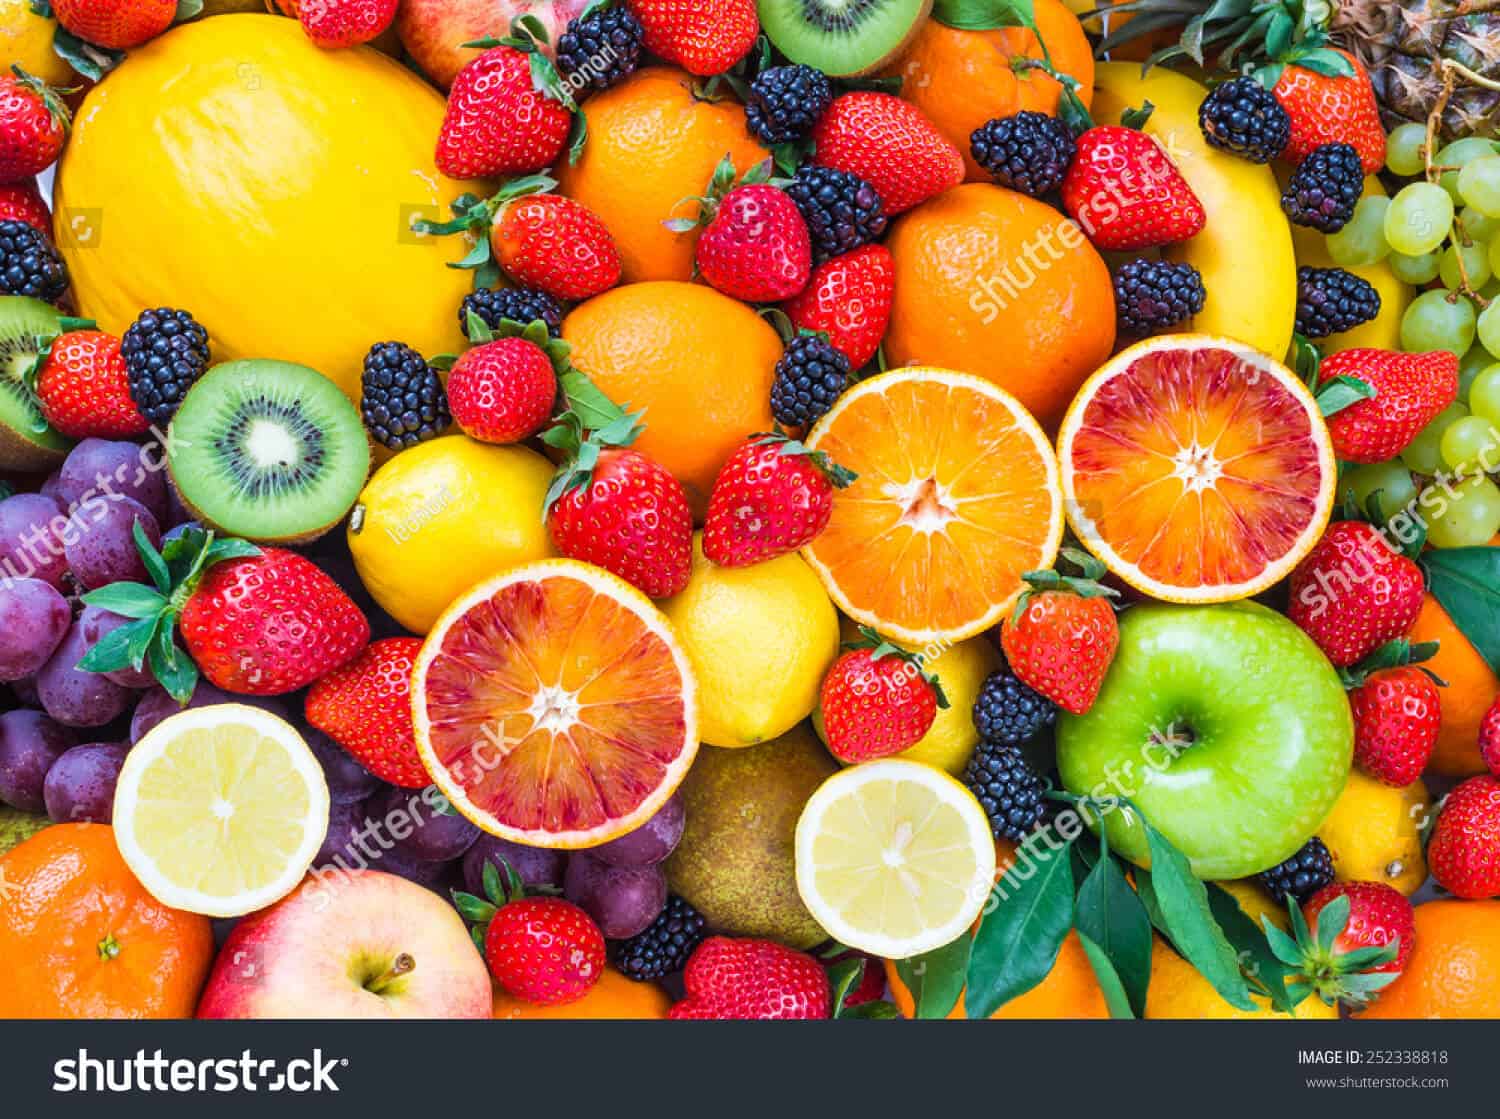 6 triệu hình ảnh trái cây chất lượng cao trên Shutterstock